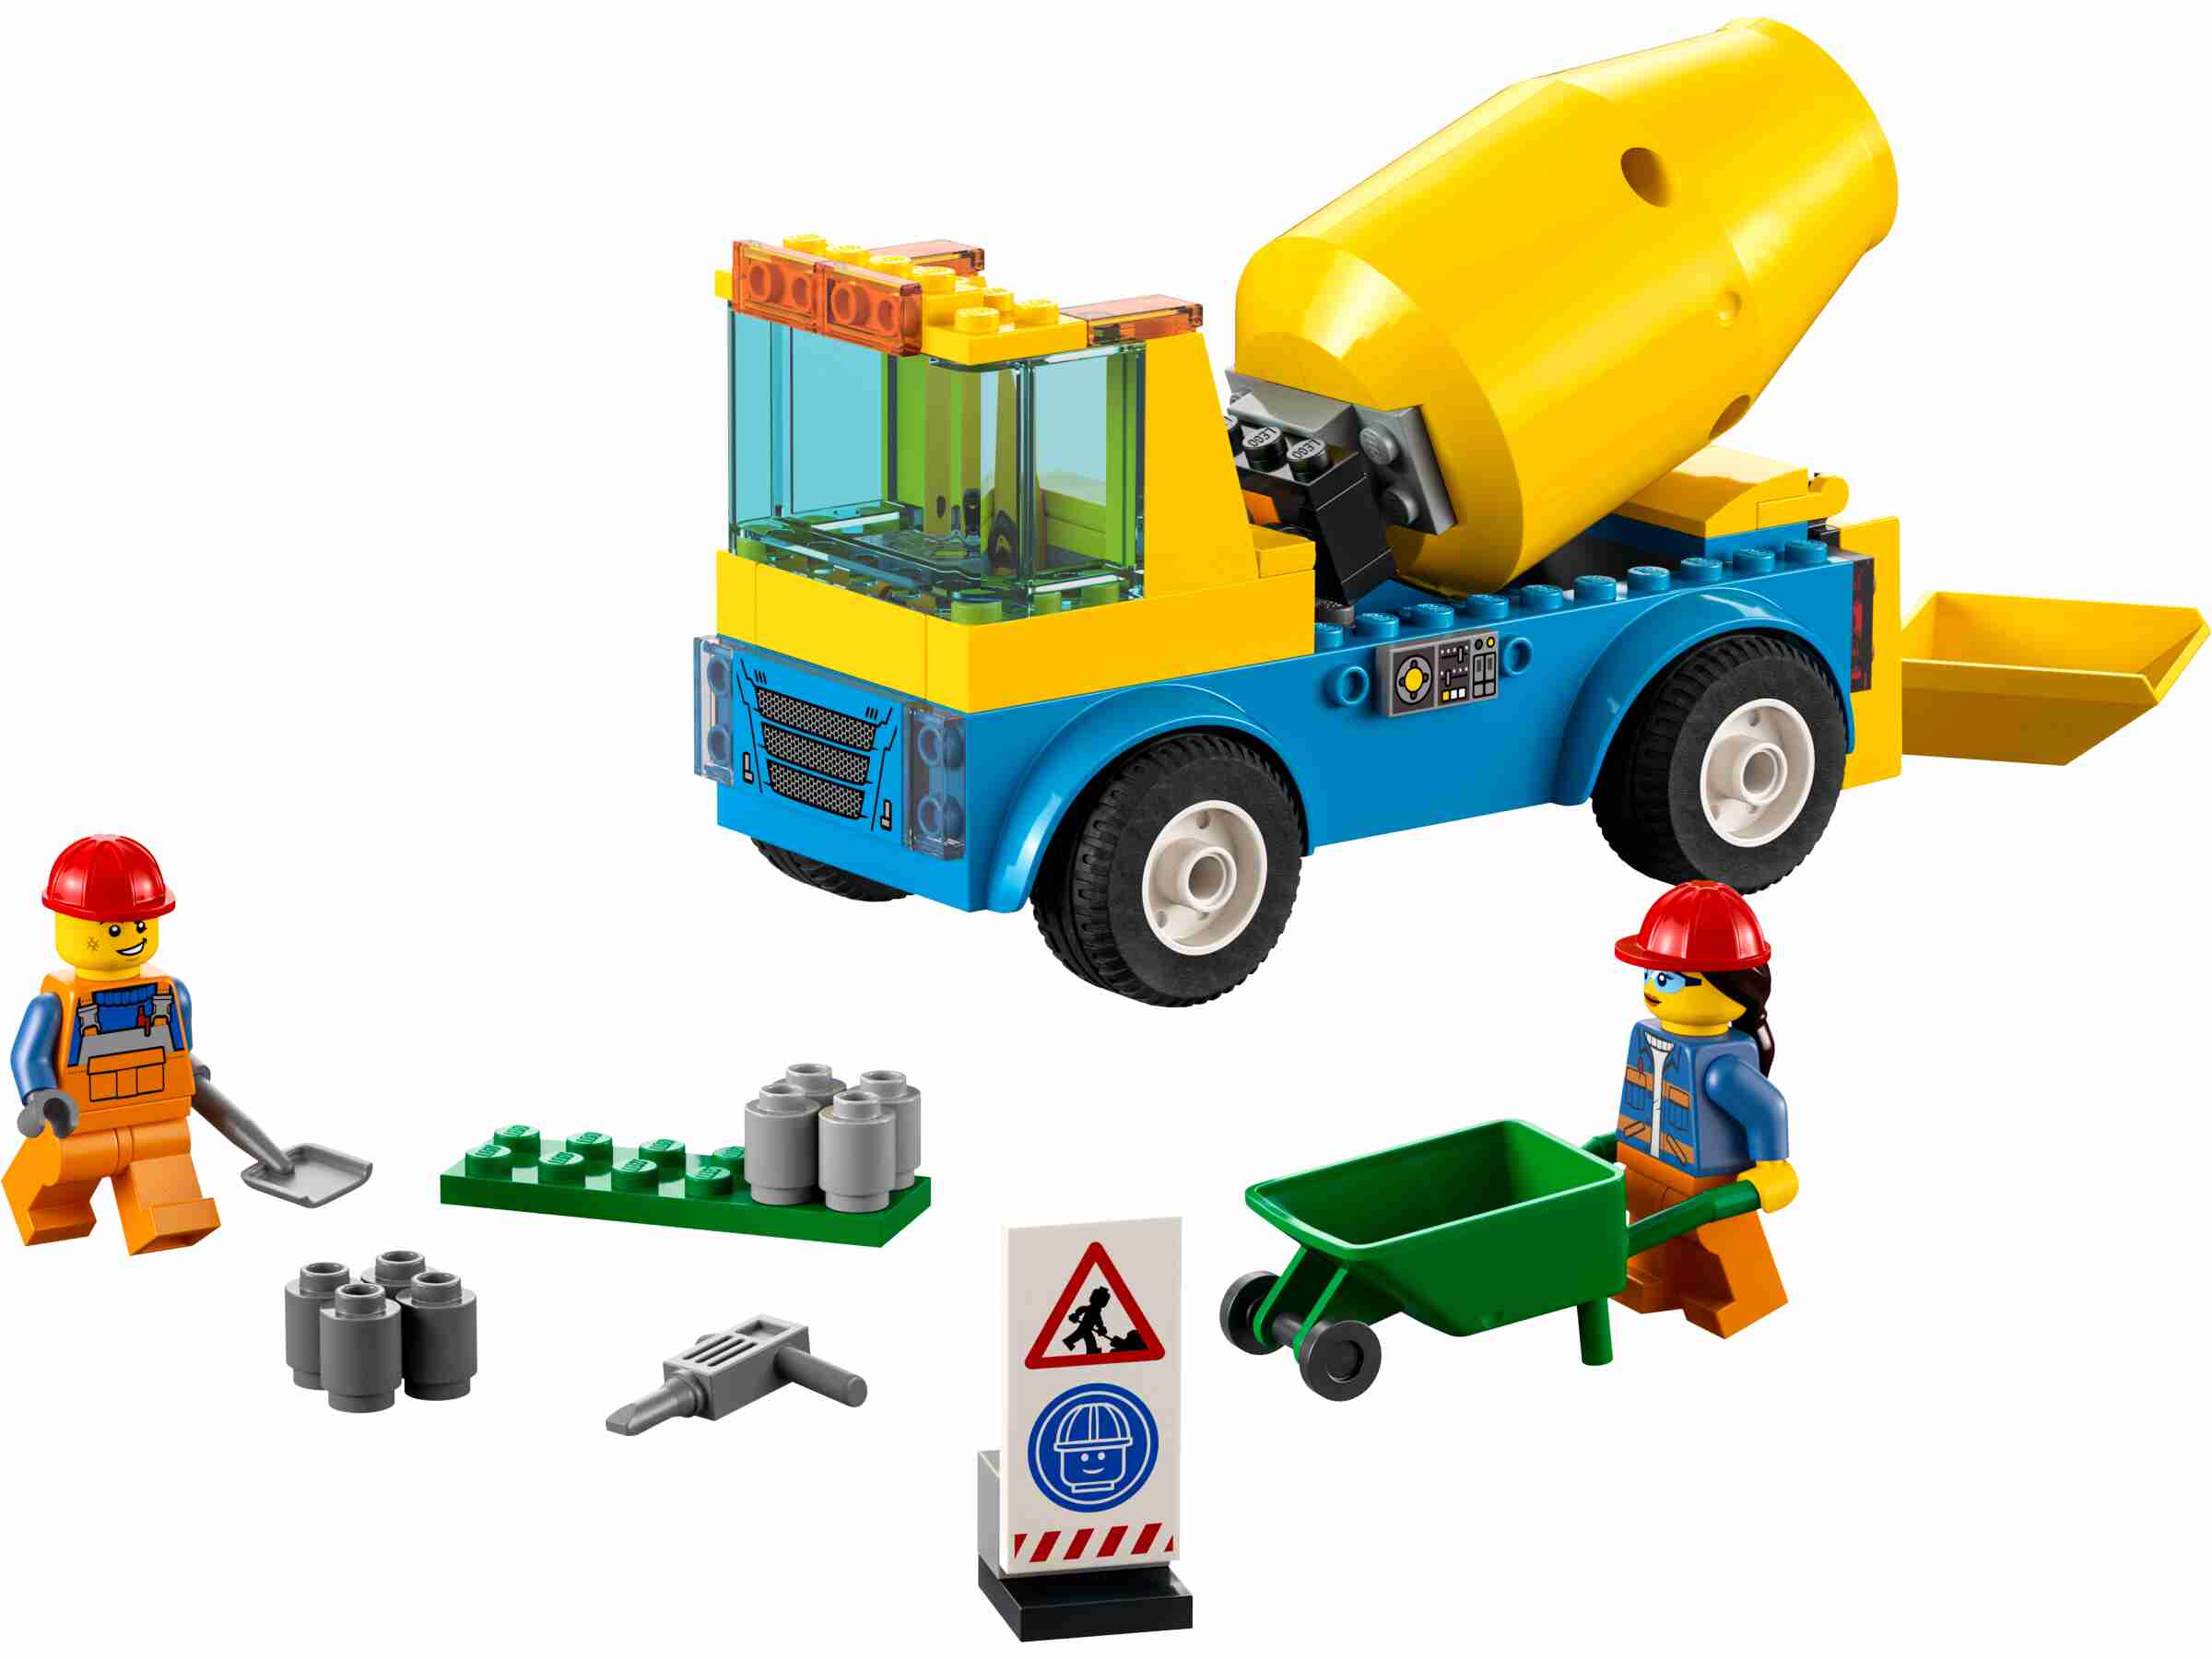 LEGO 60325 City Starke Fahrzeuge Betonmischer,  Baufahrzeugen und Minifiguren